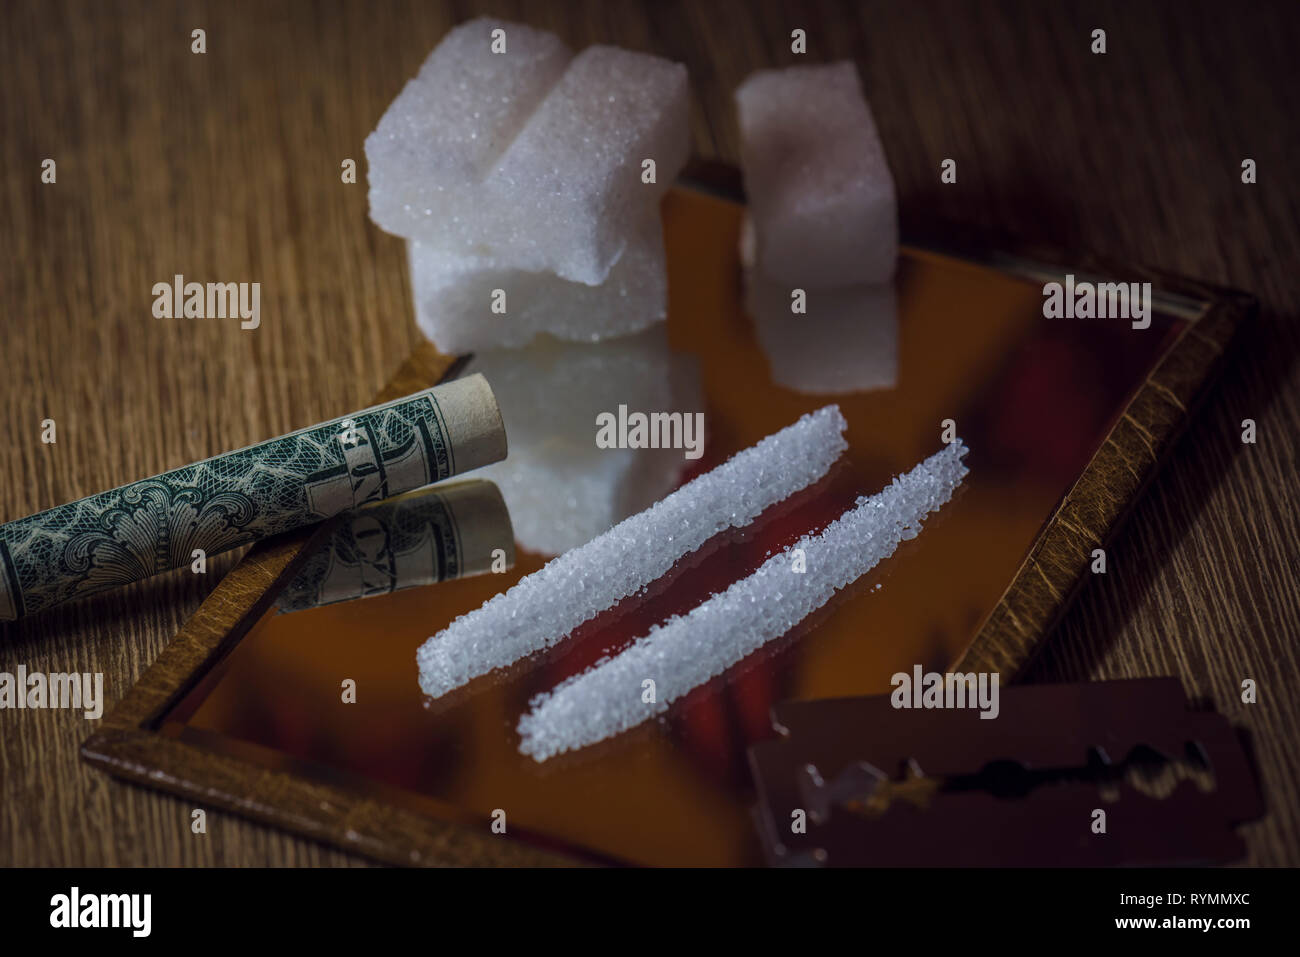 Konzeptionelle Szene von Zucker verursacht gesundheitliche Probleme wie echten Drogen. Stockfoto